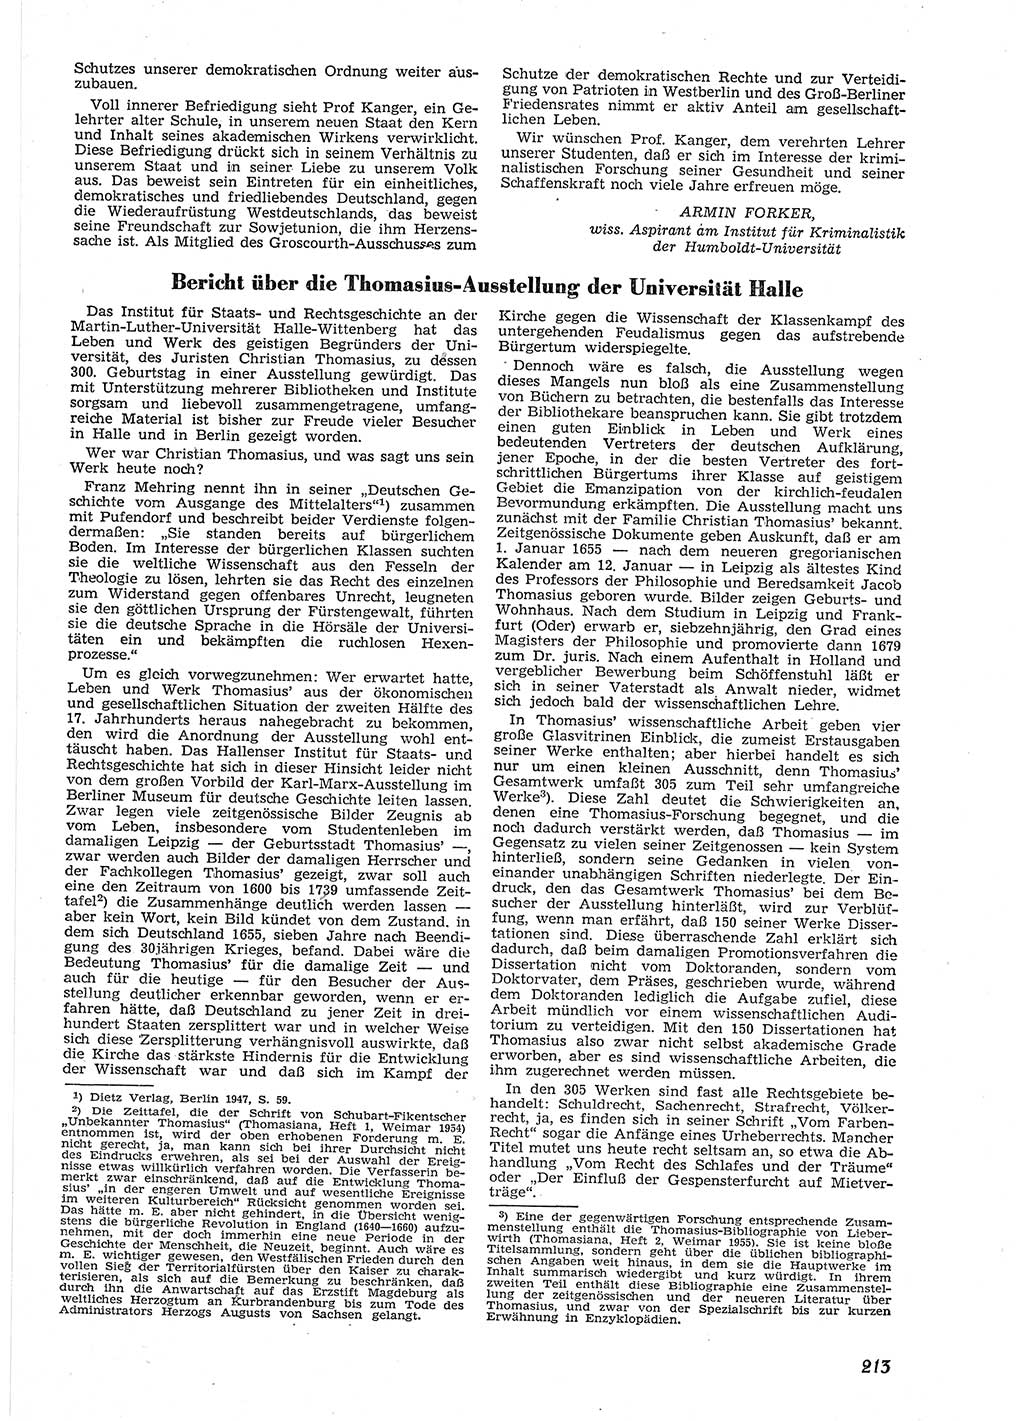 Neue Justiz (NJ), Zeitschrift für Recht und Rechtswissenschaft [Deutsche Demokratische Republik (DDR)], 9. Jahrgang 1955, Seite 213 (NJ DDR 1955, S. 213)